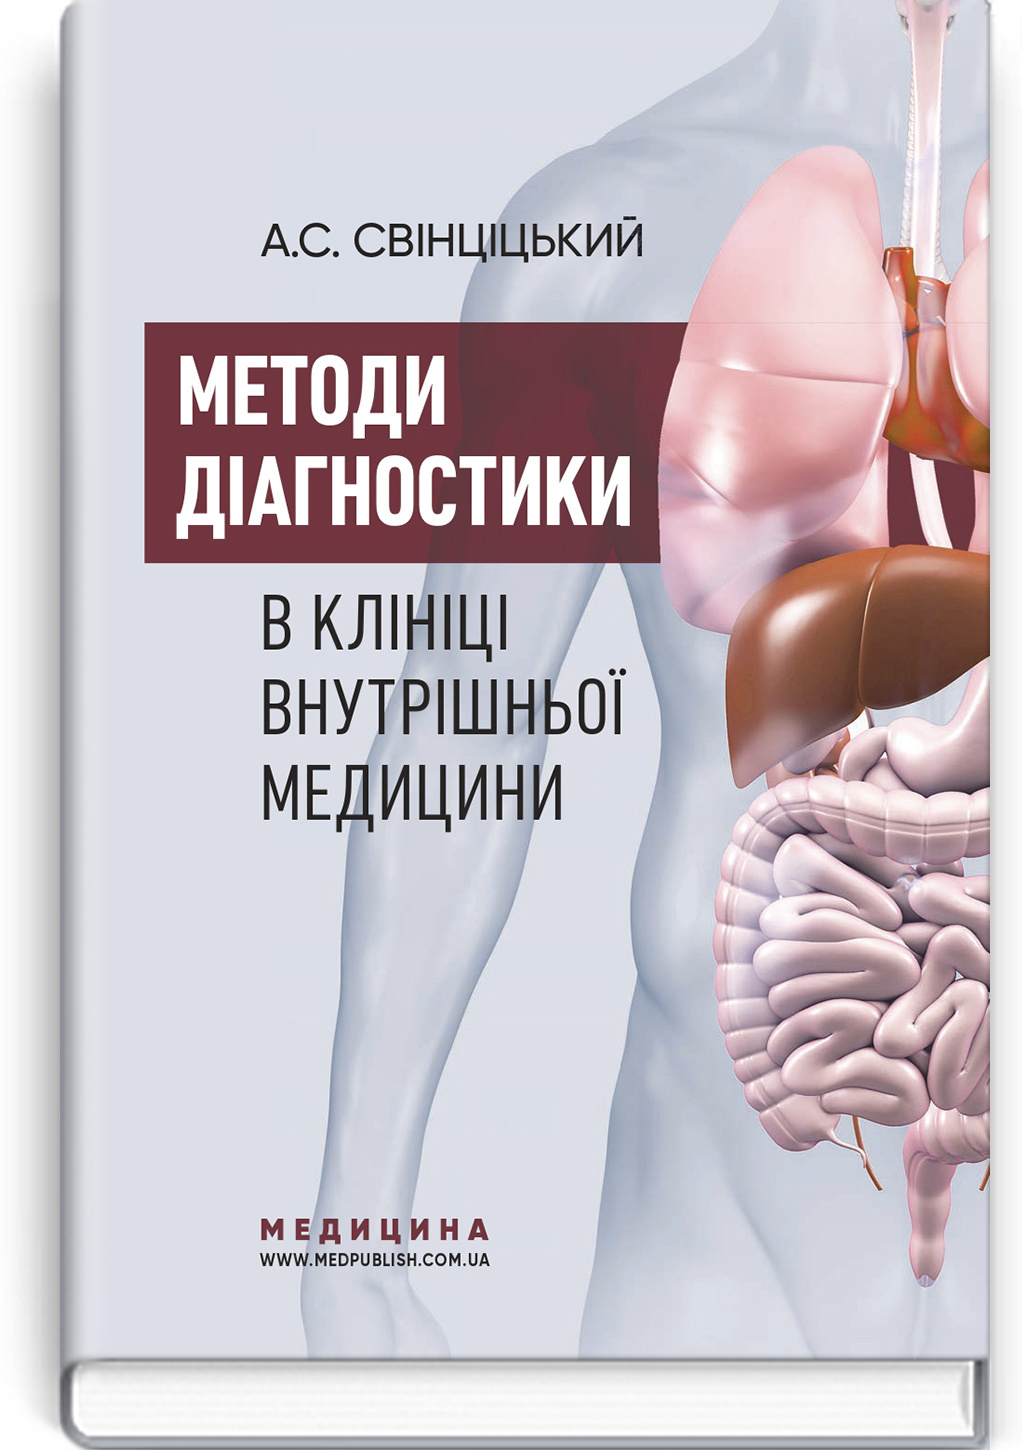 Методи діагностики в клініці внутрішньої медицини: навчальний посібник. Автор — А.С. Свінціцький. 